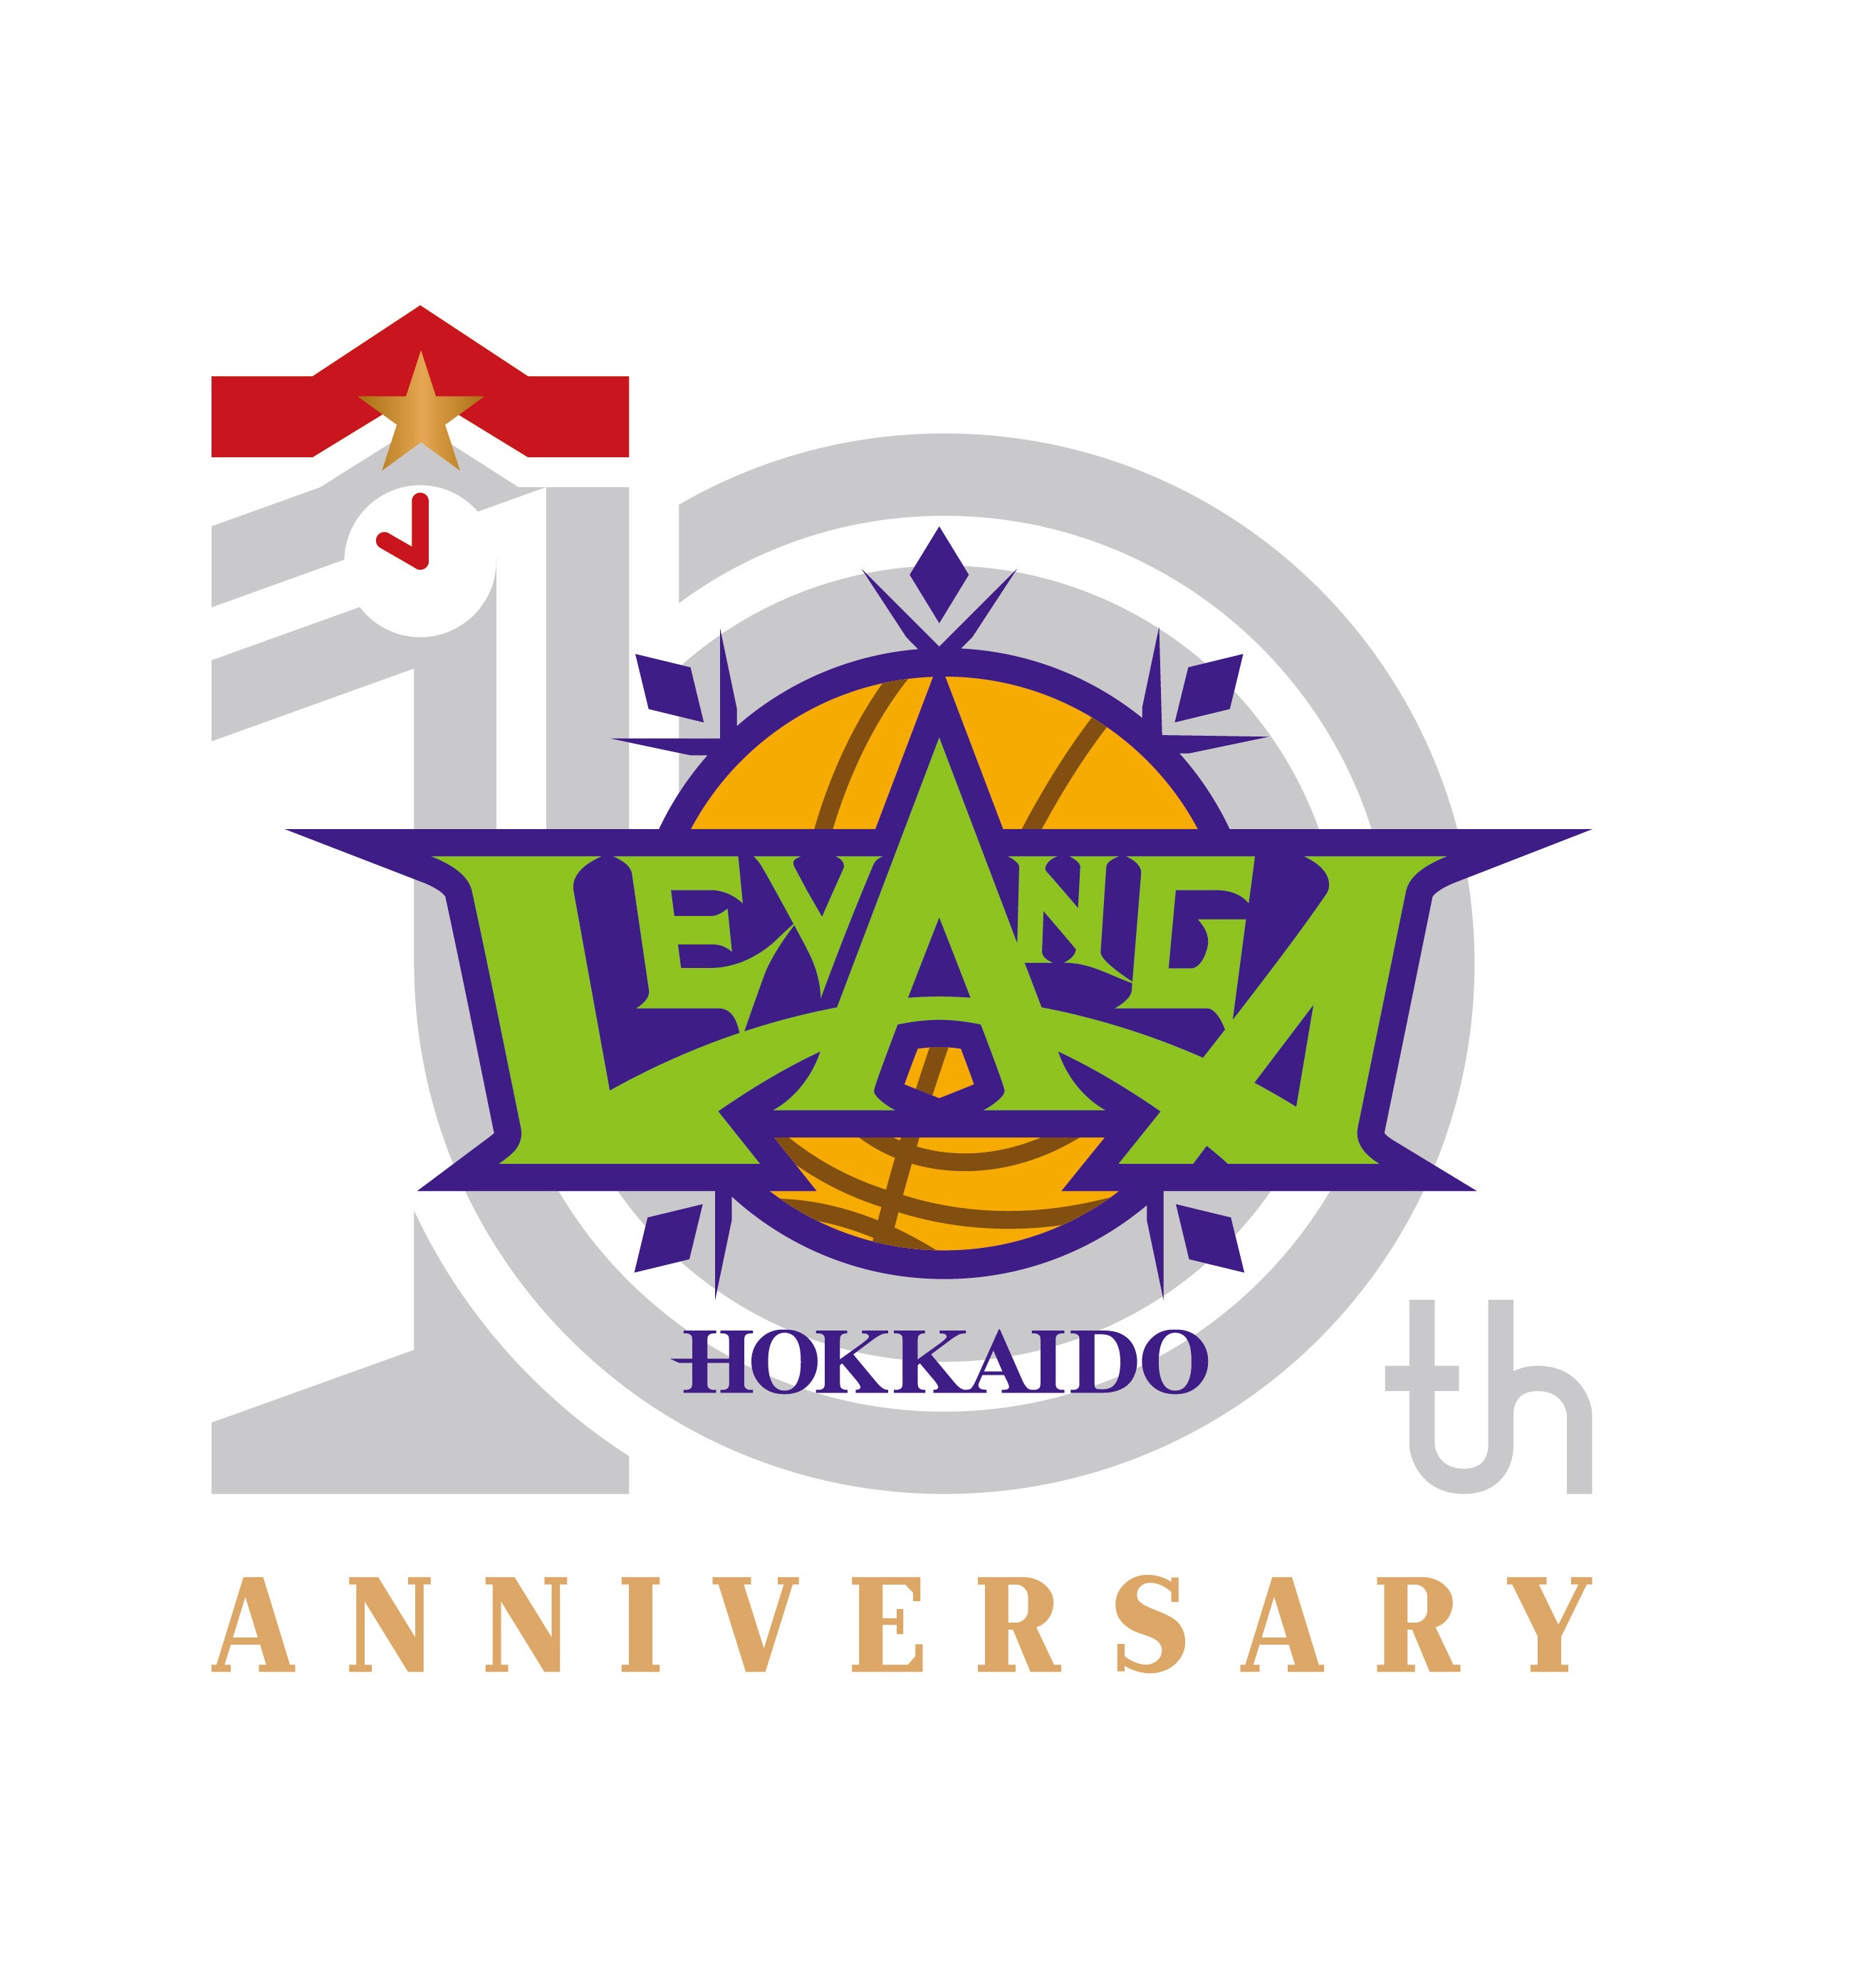 レバンガ北海道10周年記念ロゴ決定のお知らせ レバンガ北海道